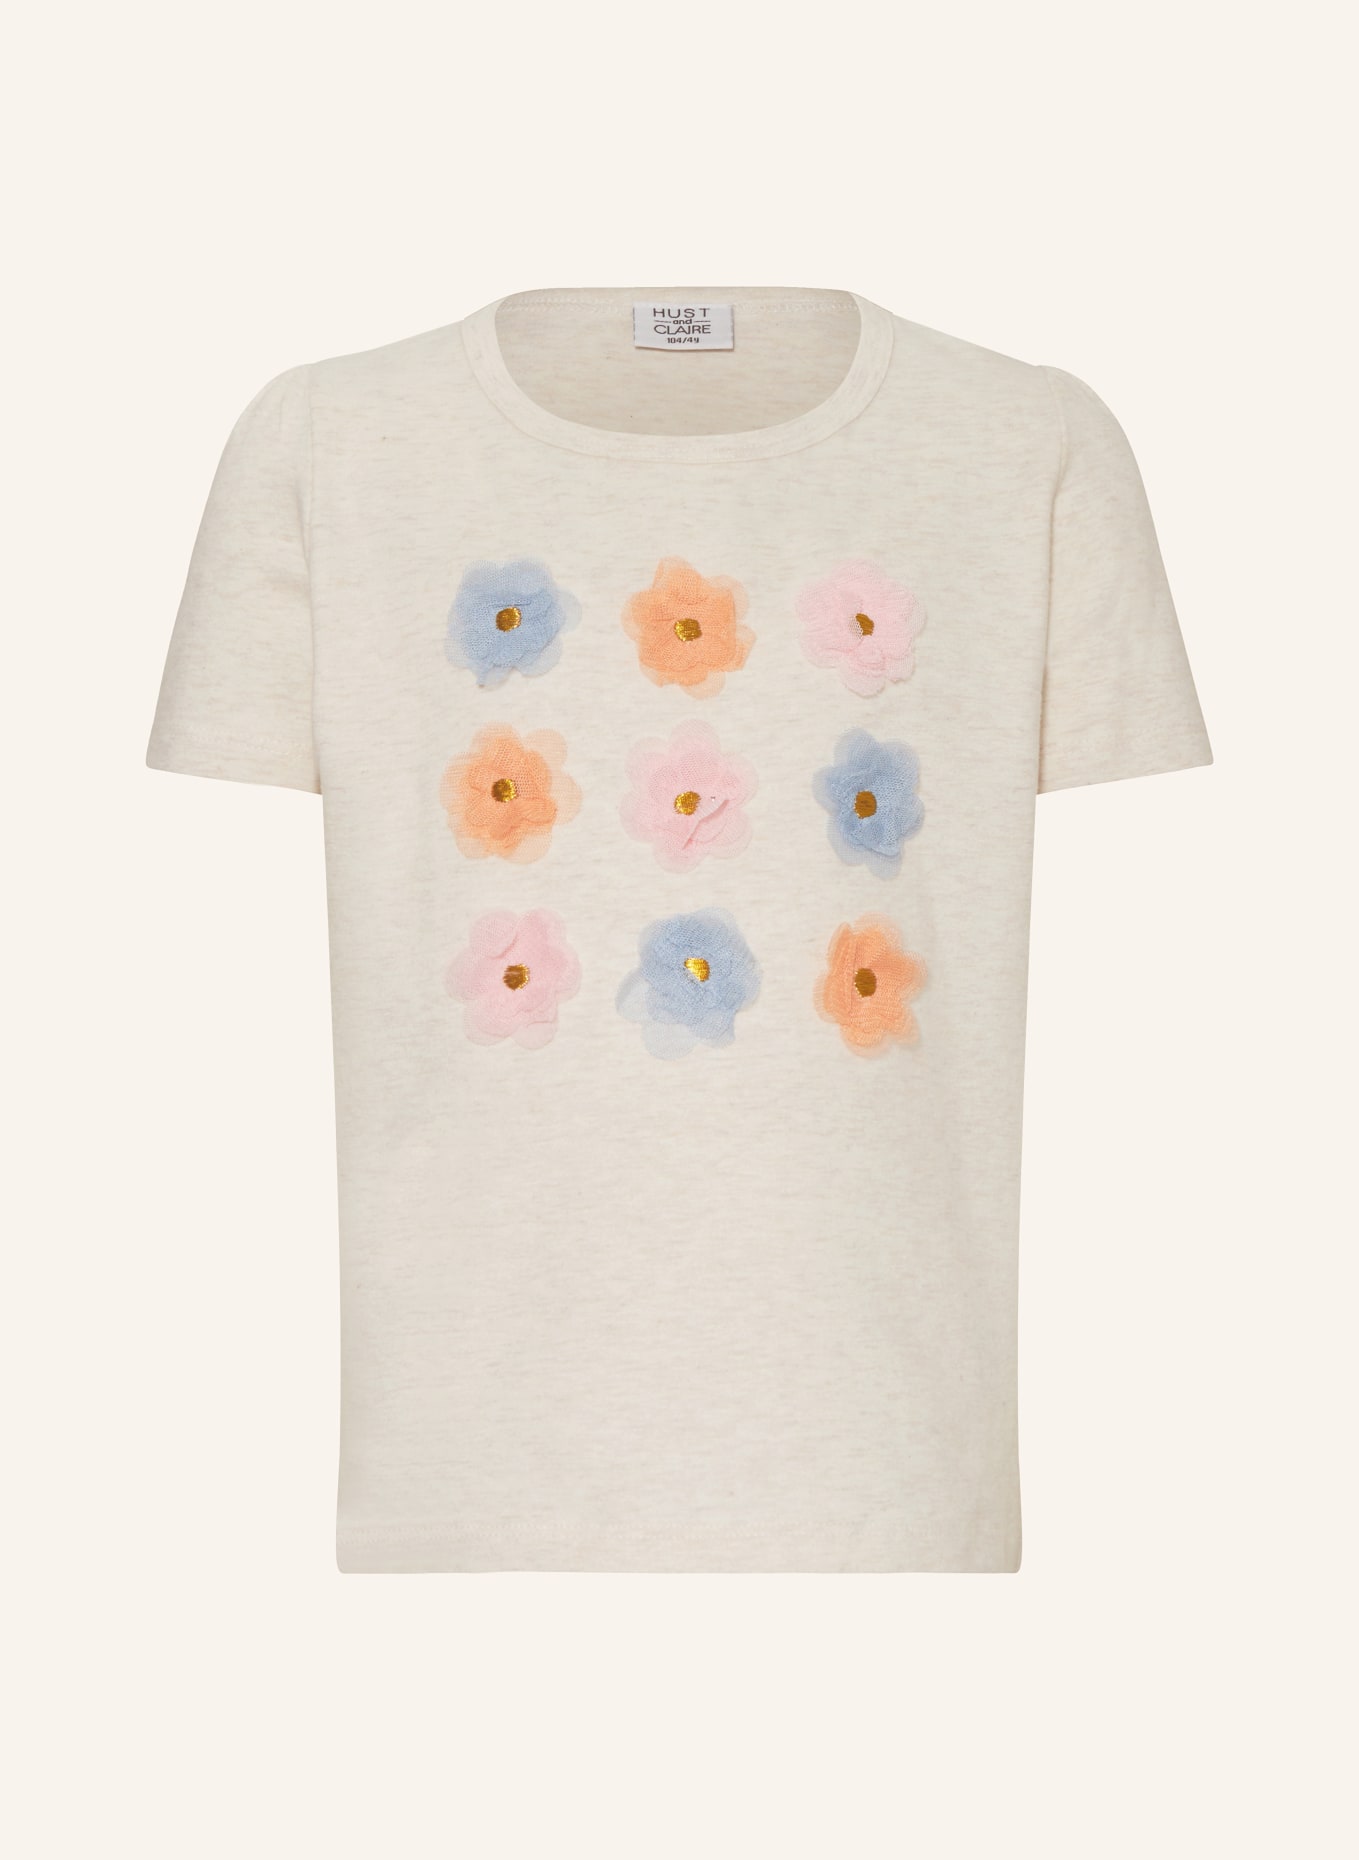 HUST and CLAIRE T-Shirt ALIANA, Farbe: CREME/ HELLBLAU/ ROSA (Bild 1)